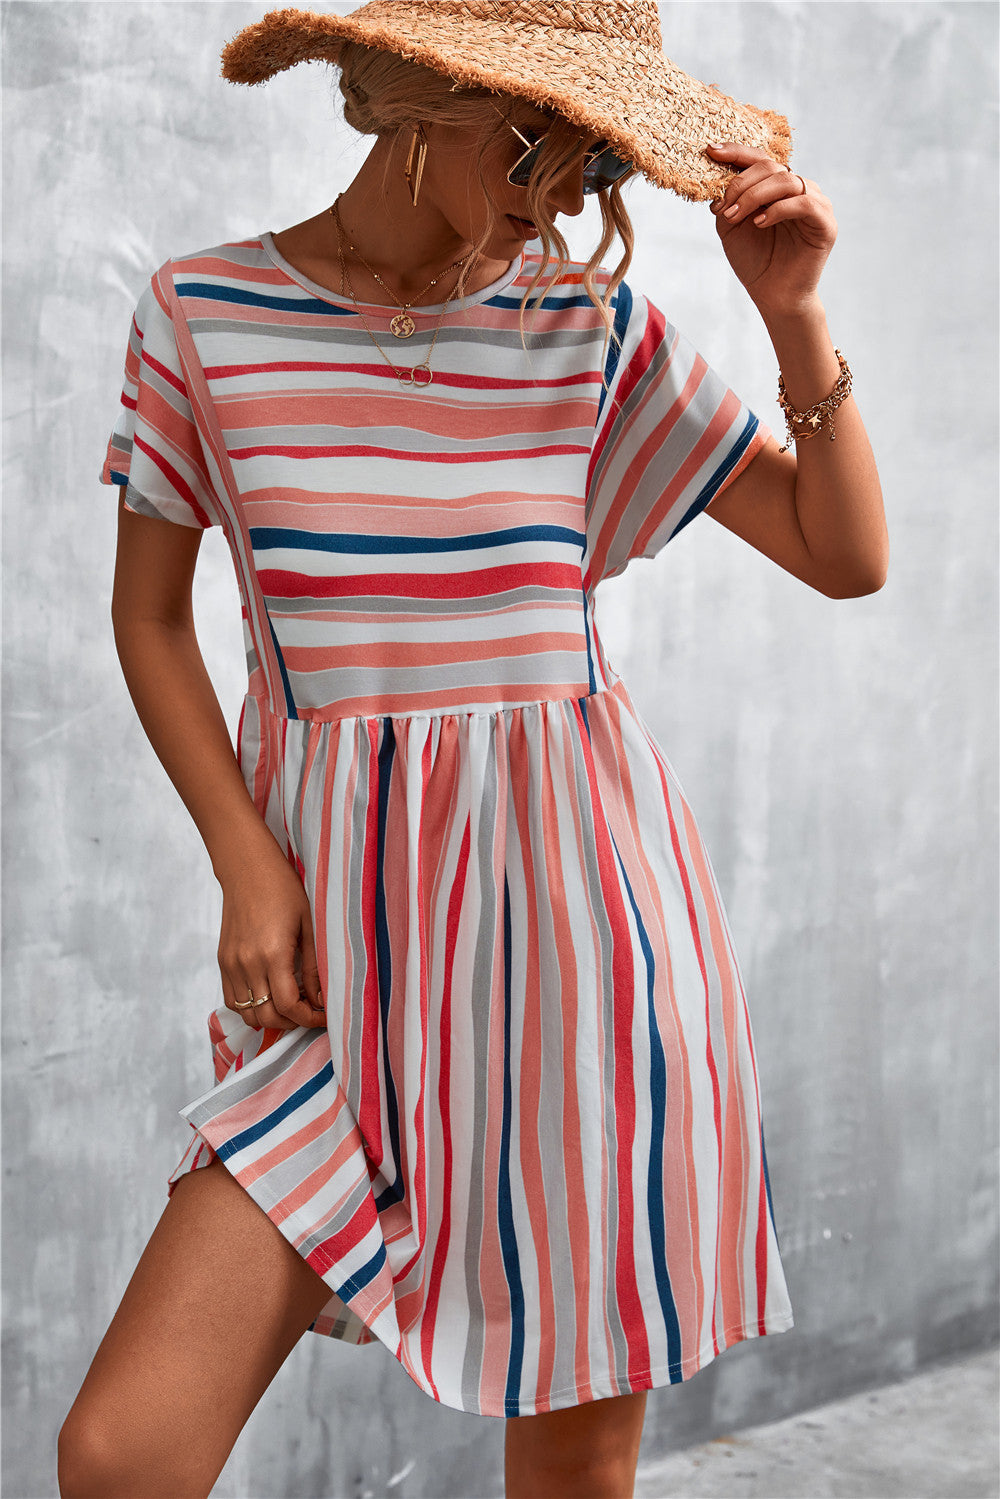 Stylish Women's Classic Striped Printed Dress Skirts